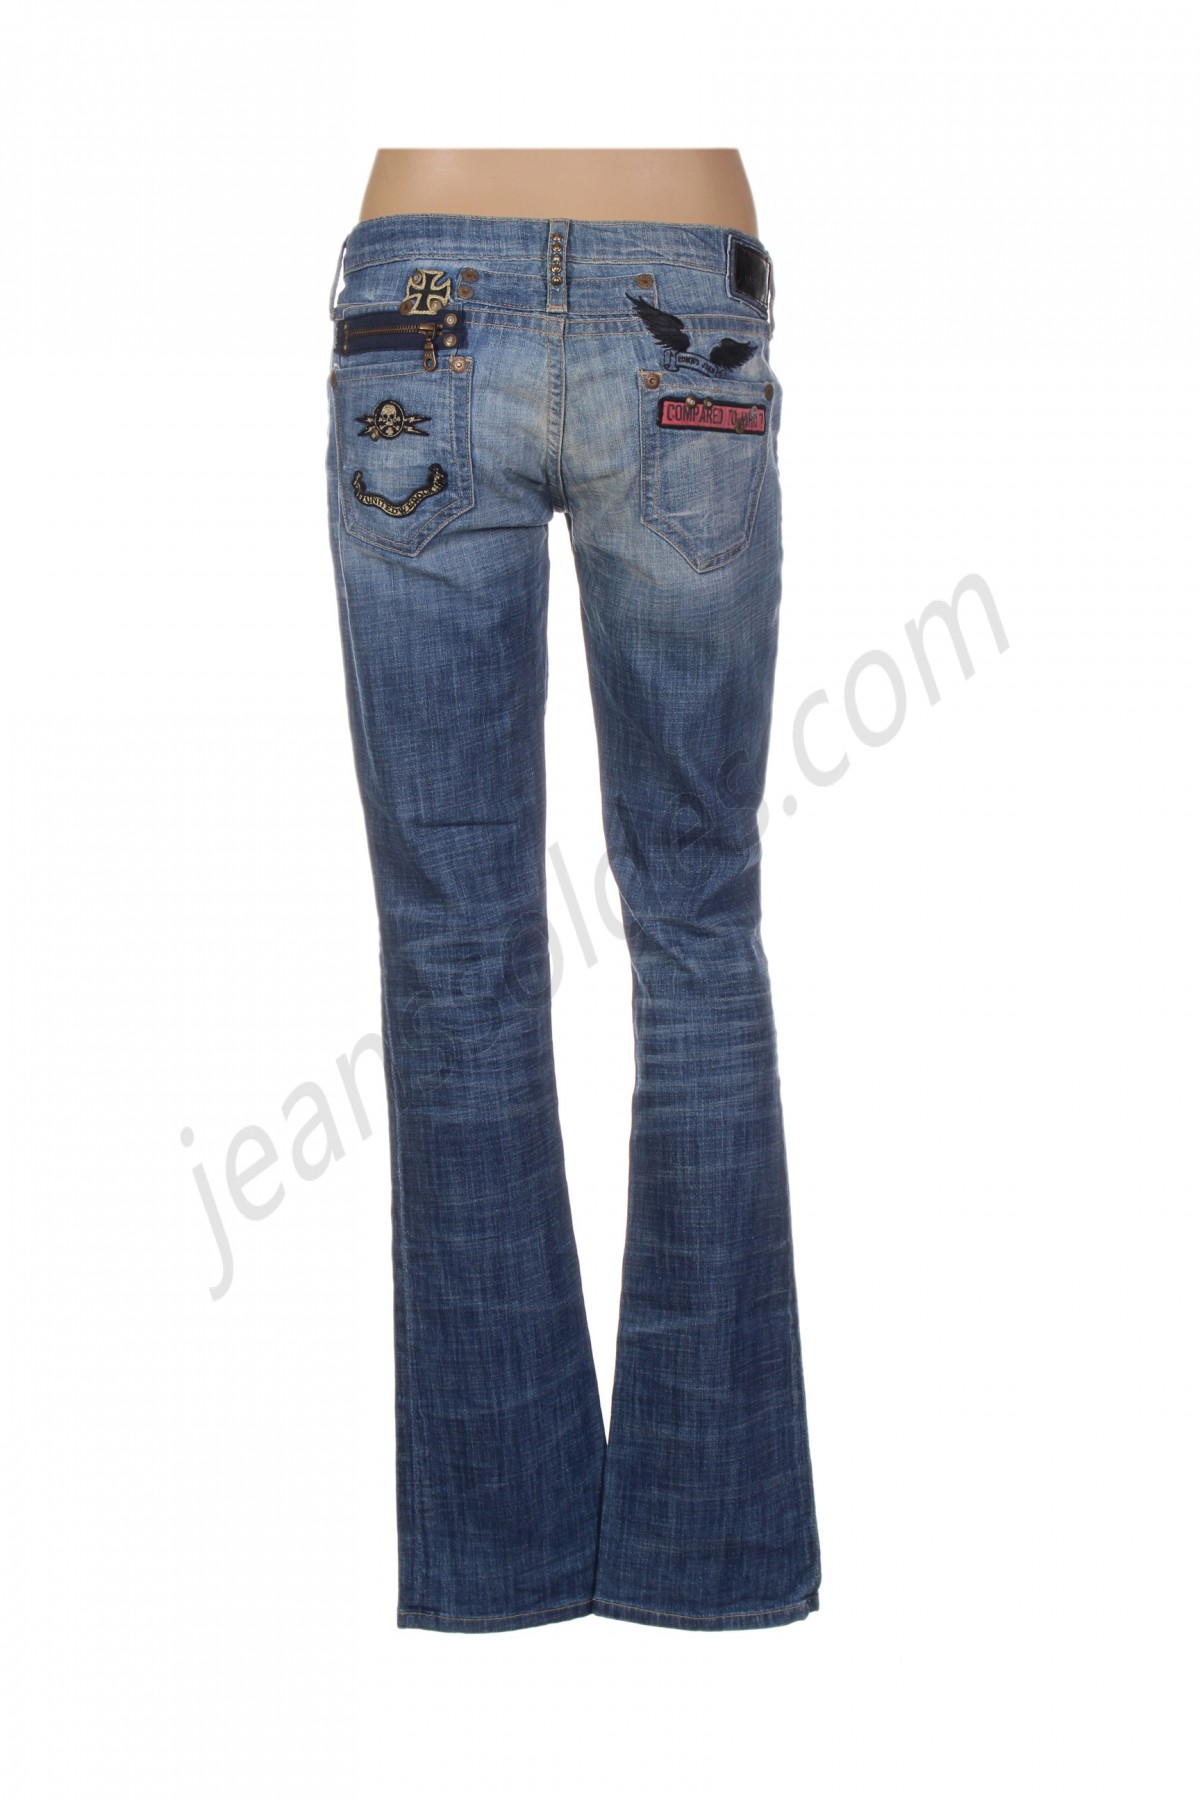 robin's jean-Jeans coupe droite prix d’amis - -1